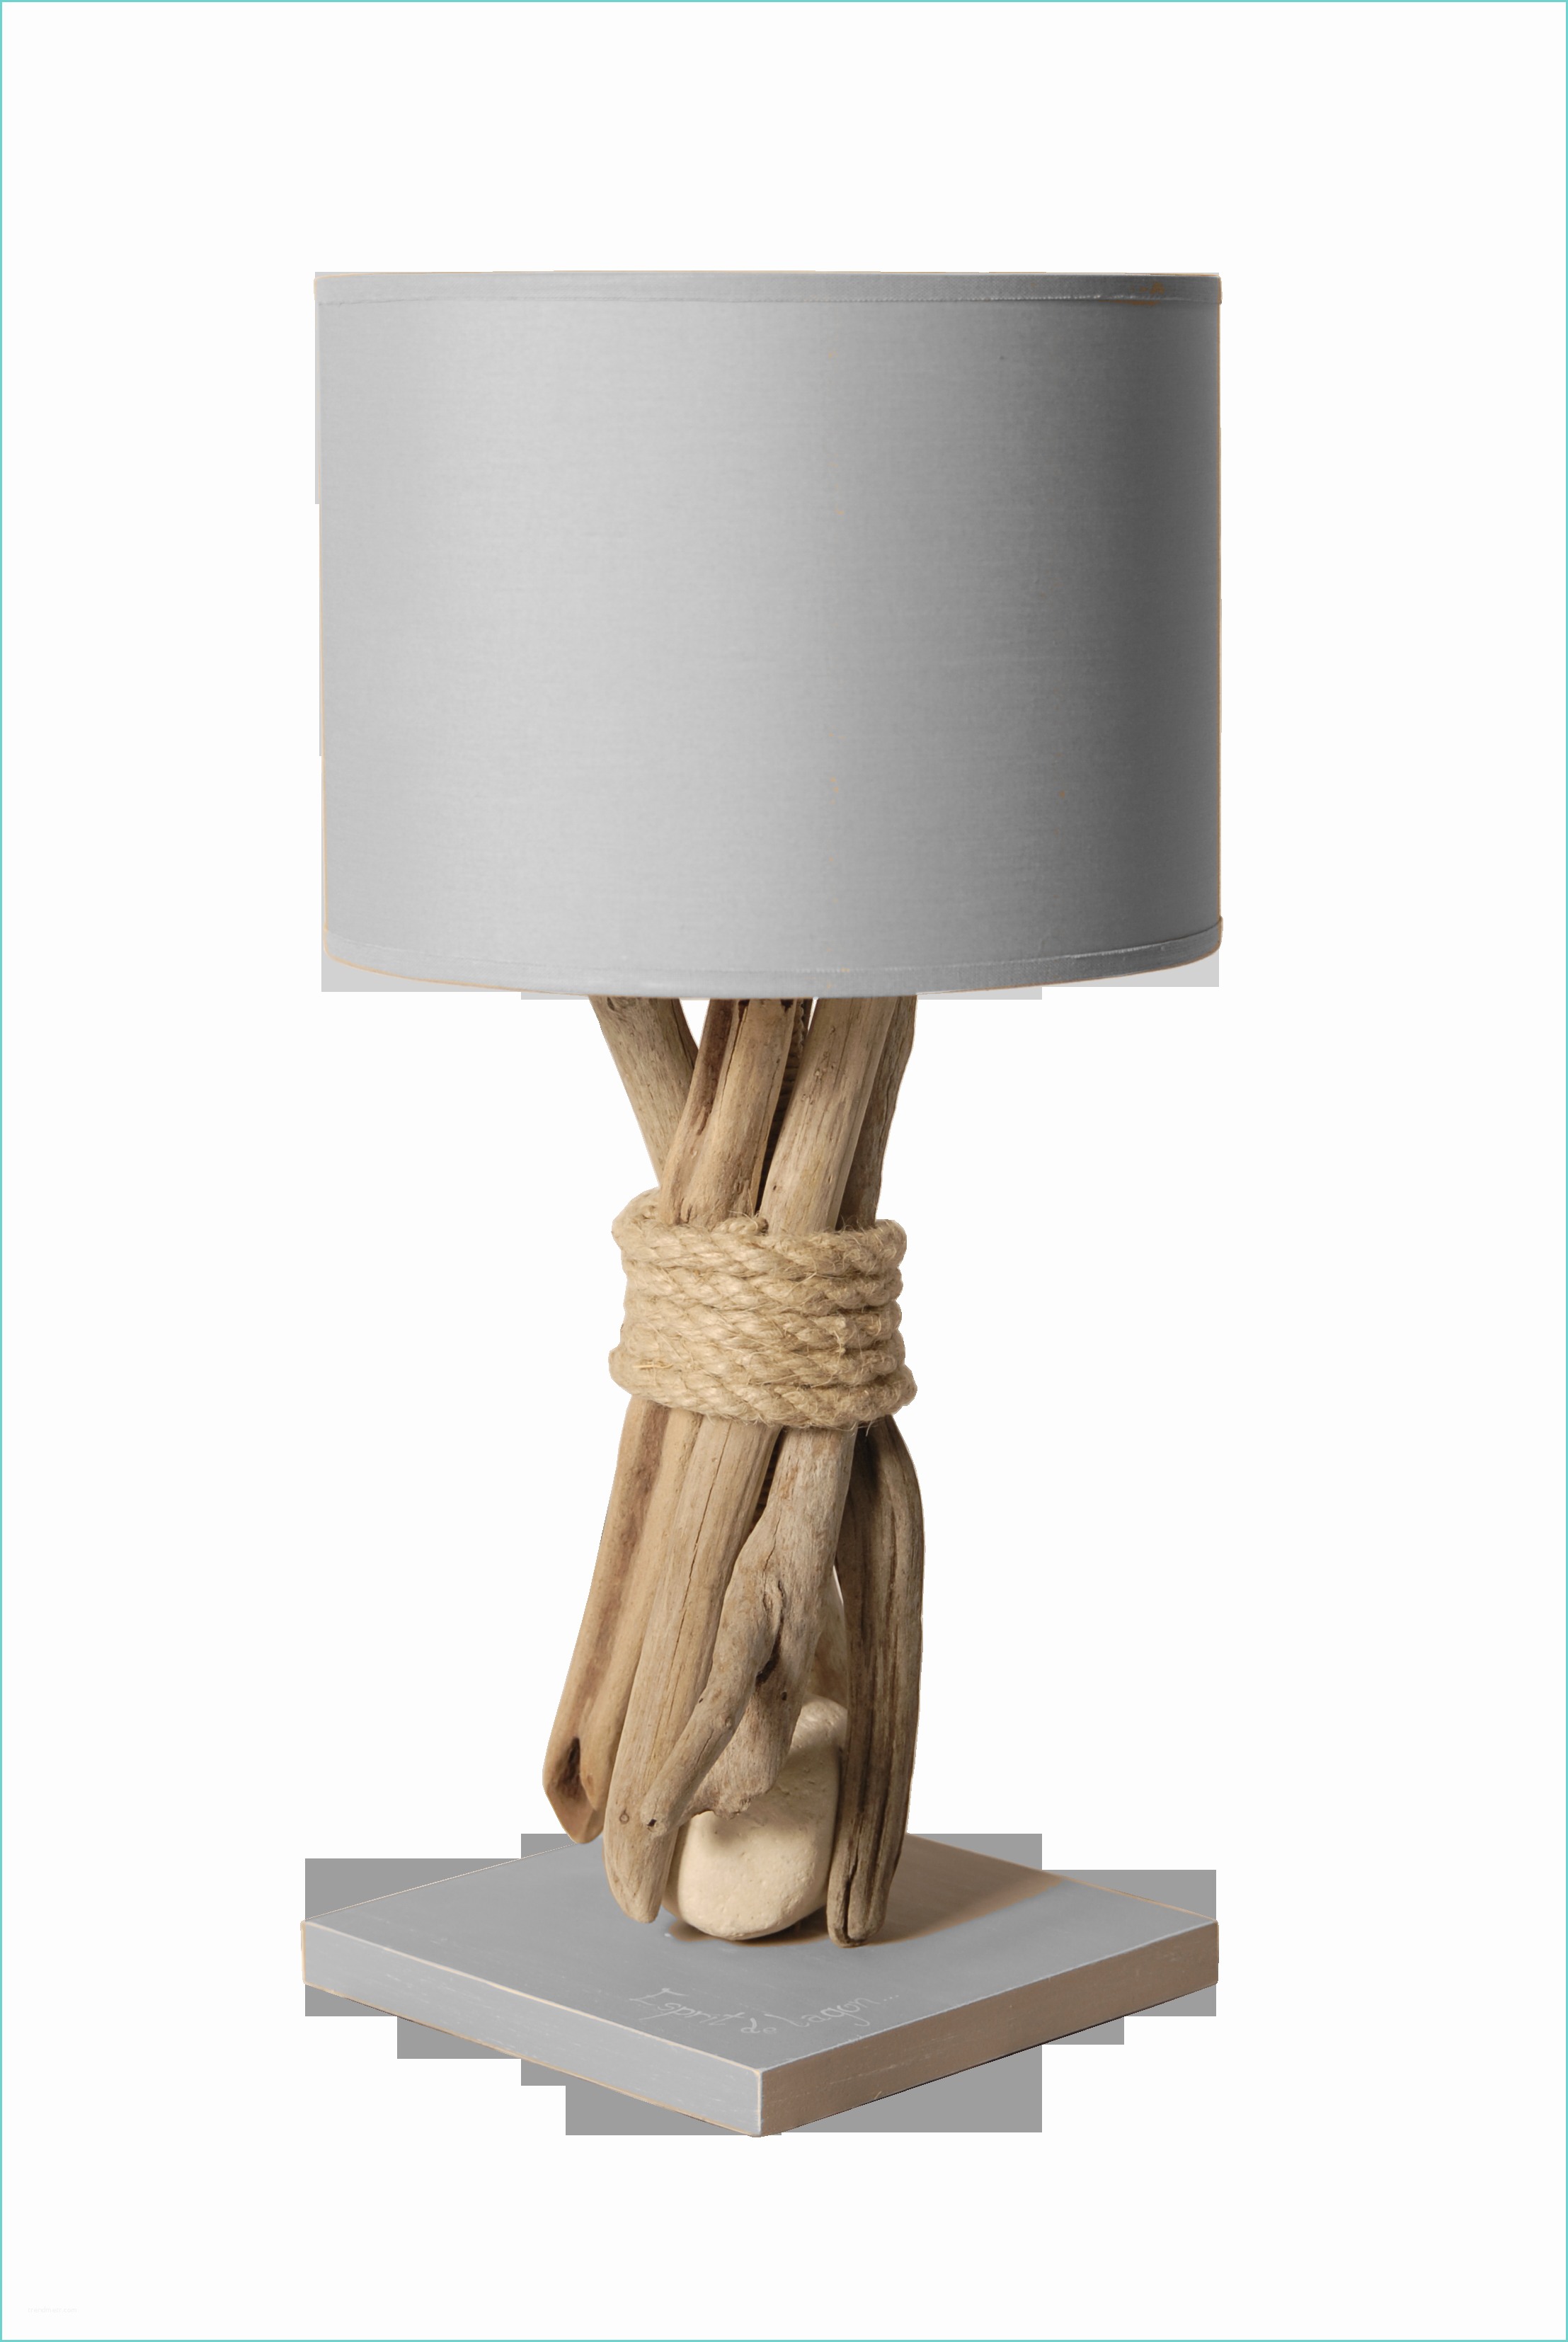 Lampe De Chevet Tactile but Ikea Lampe De Chevet Collection Avec Lampe De Chevet